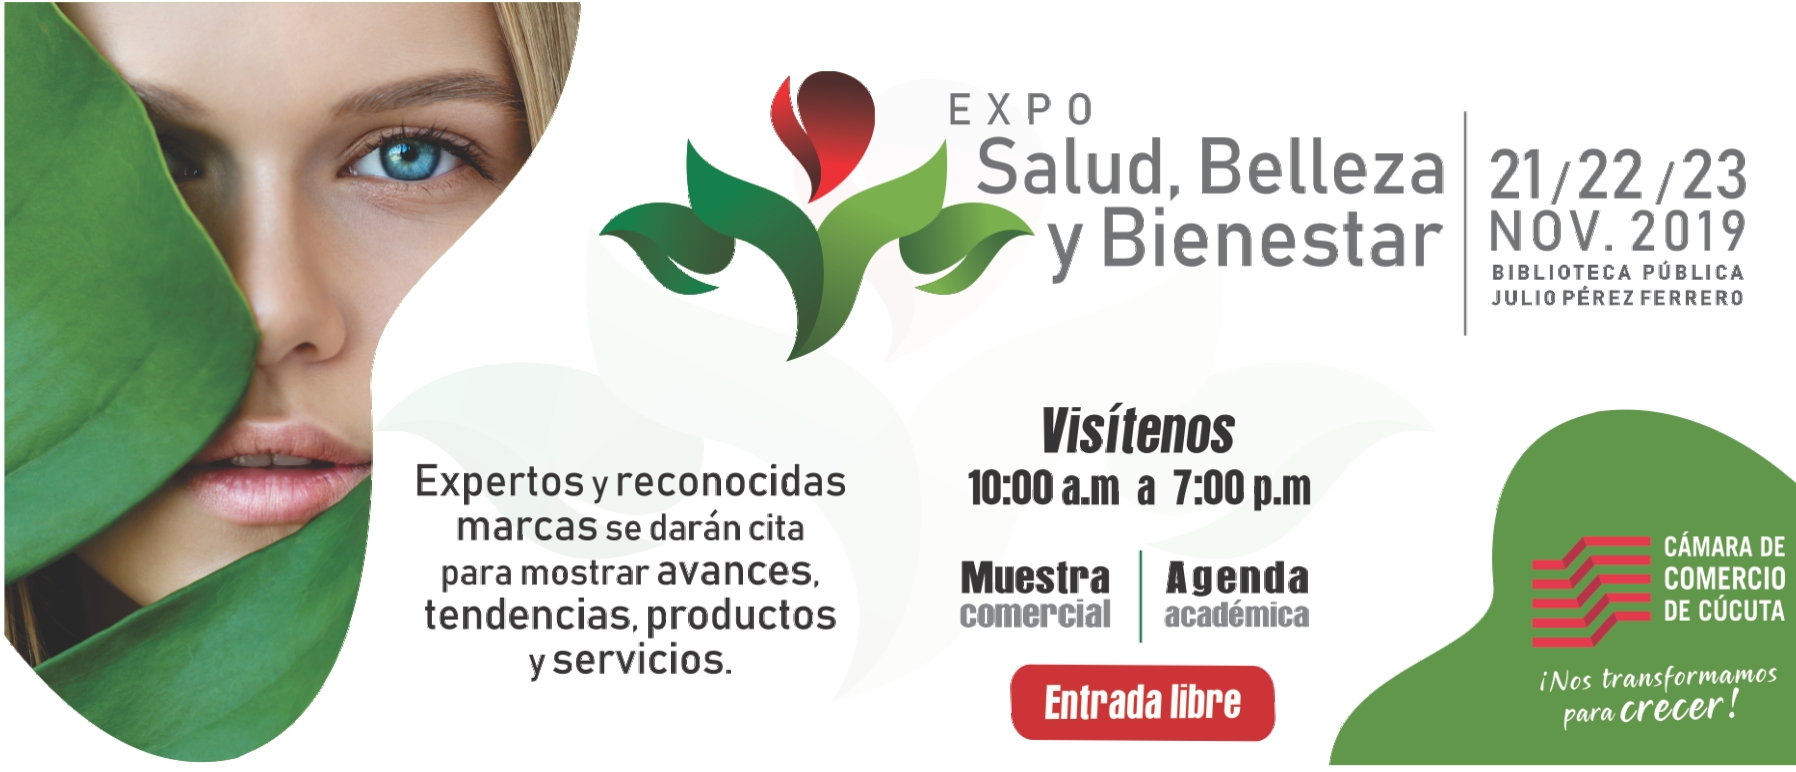 Expo Salud, Belleza y Bienestar